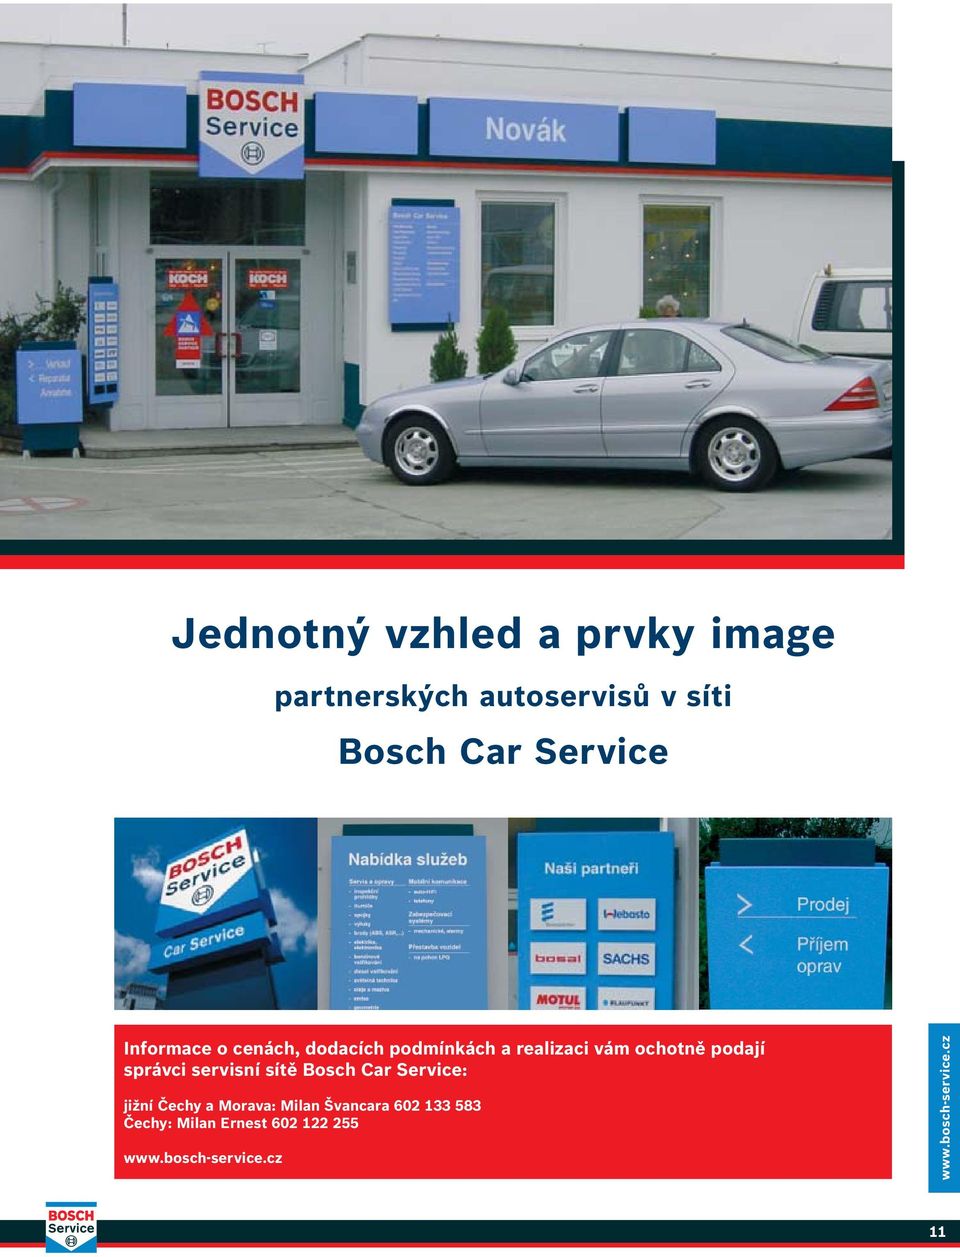 ochotně podají správci servisní sítě Bosch Car Service: jižní Čechy